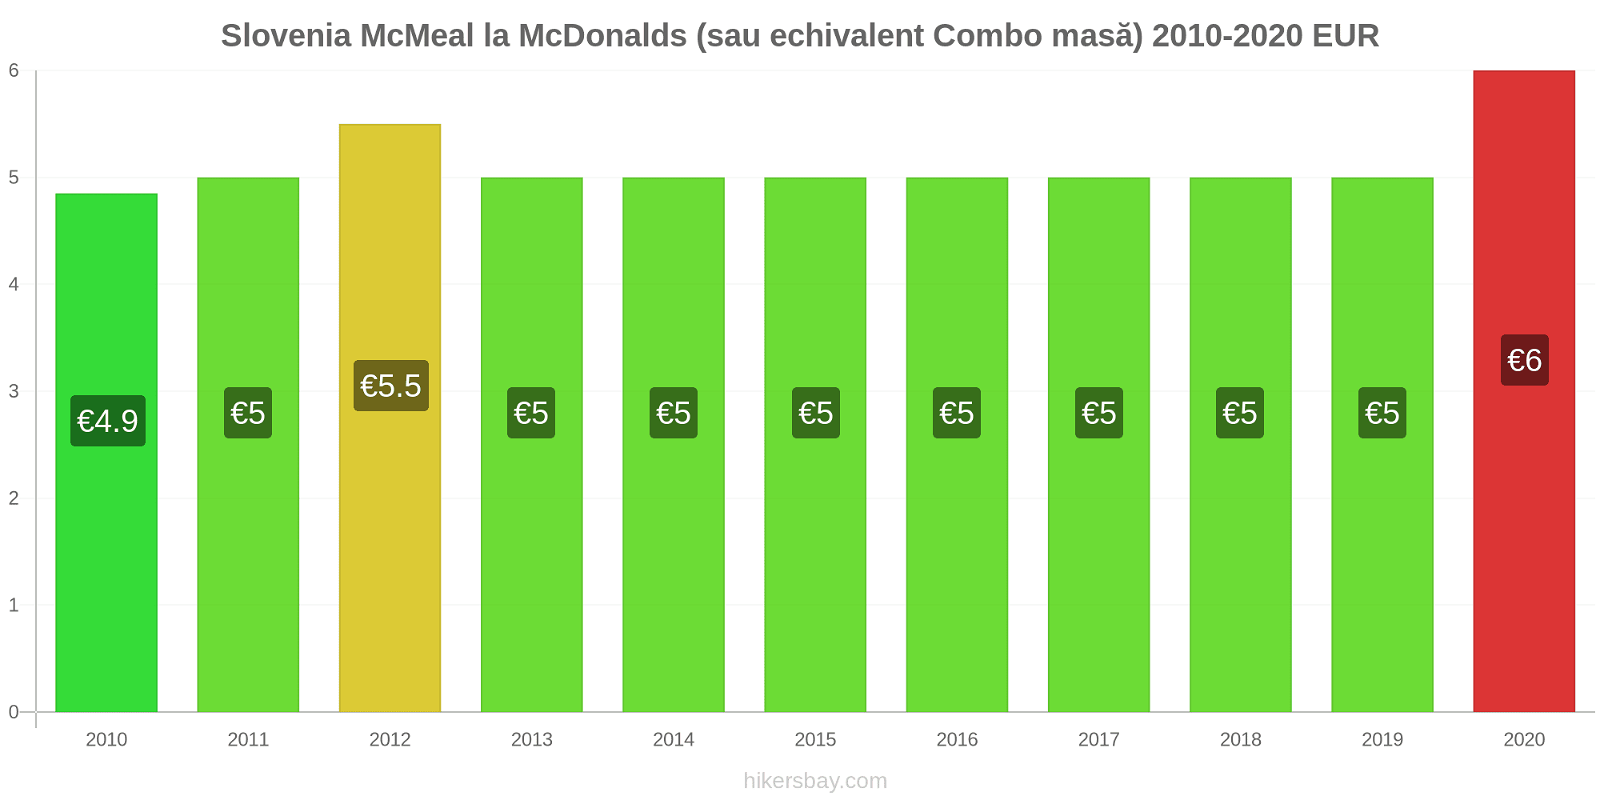 Slovenia modificări de preț McMeal la McDonalds (sau echivalent Combo masă) hikersbay.com